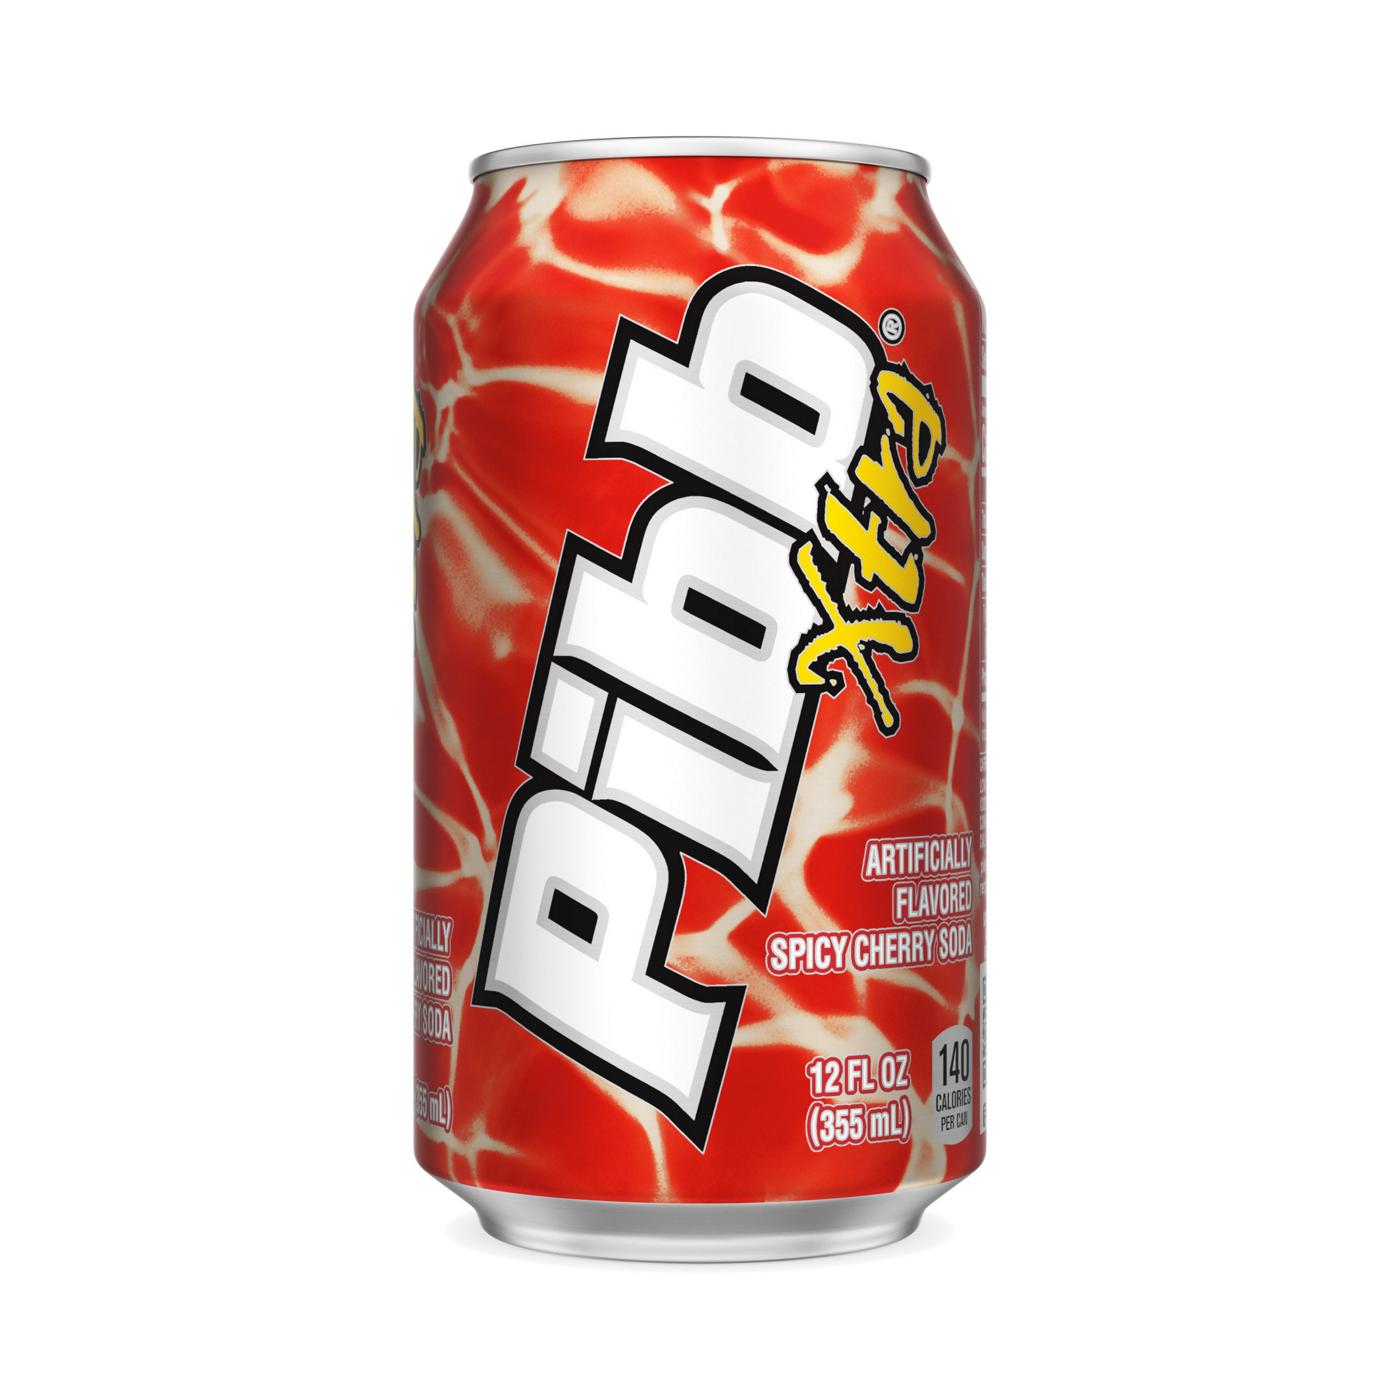 Pibb Spicy Cherry Soda; image 1 of 2